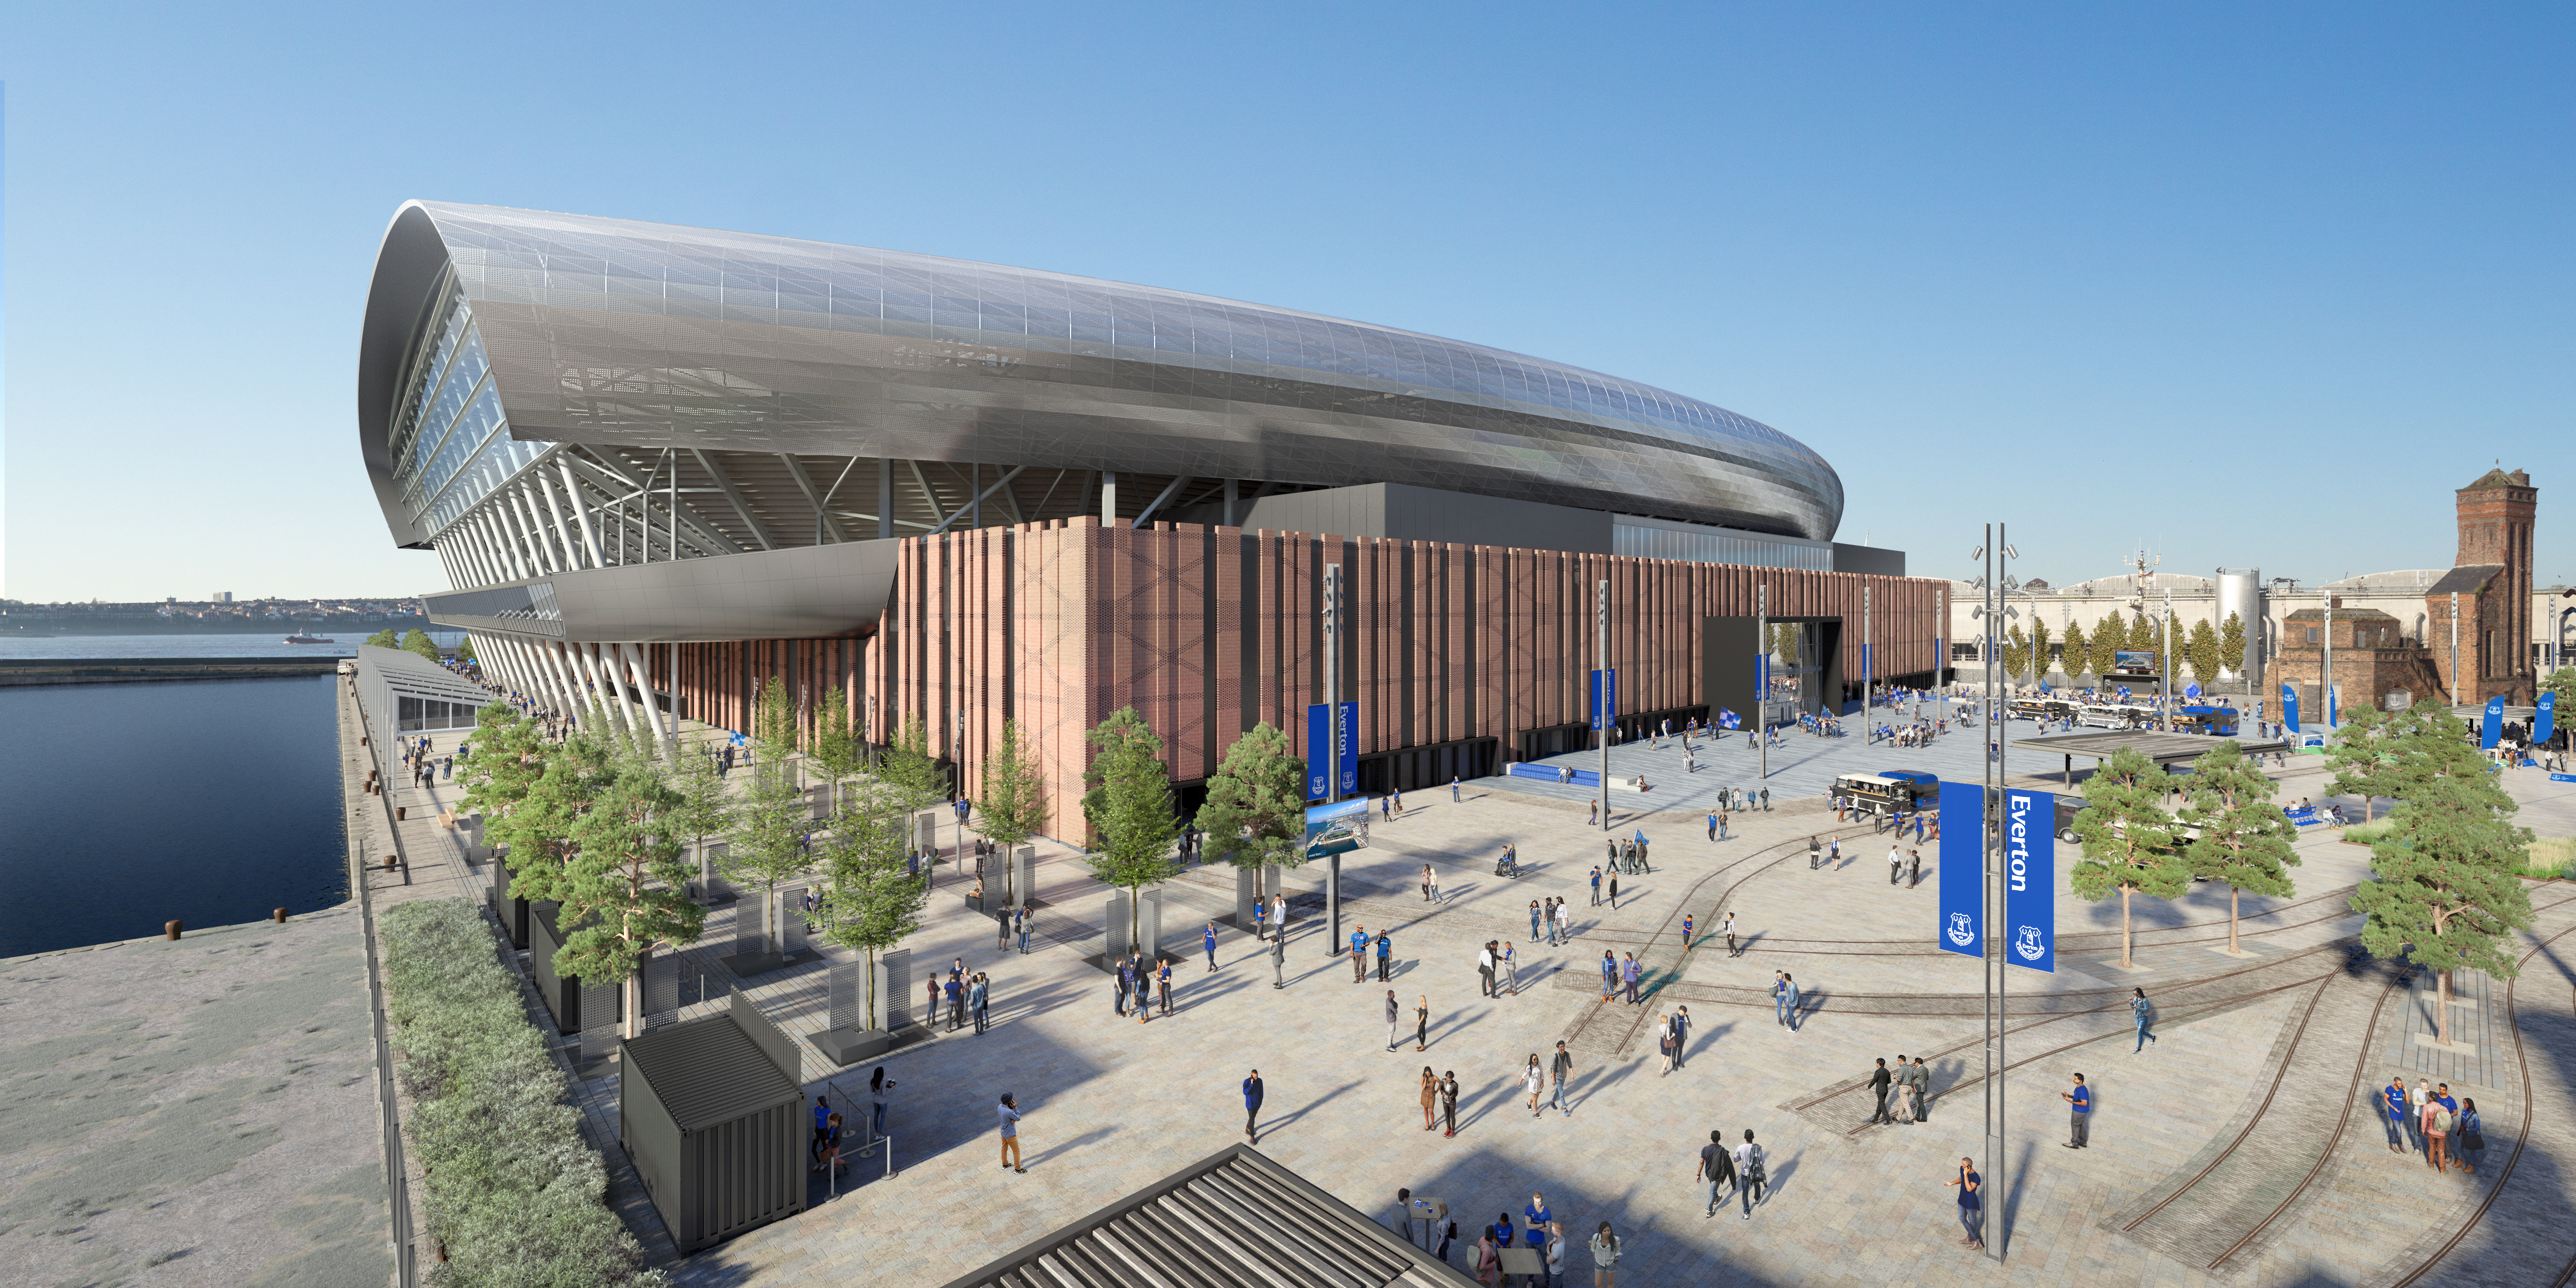 Befragung Zu Neuem Everton Stadion Stadionwelt